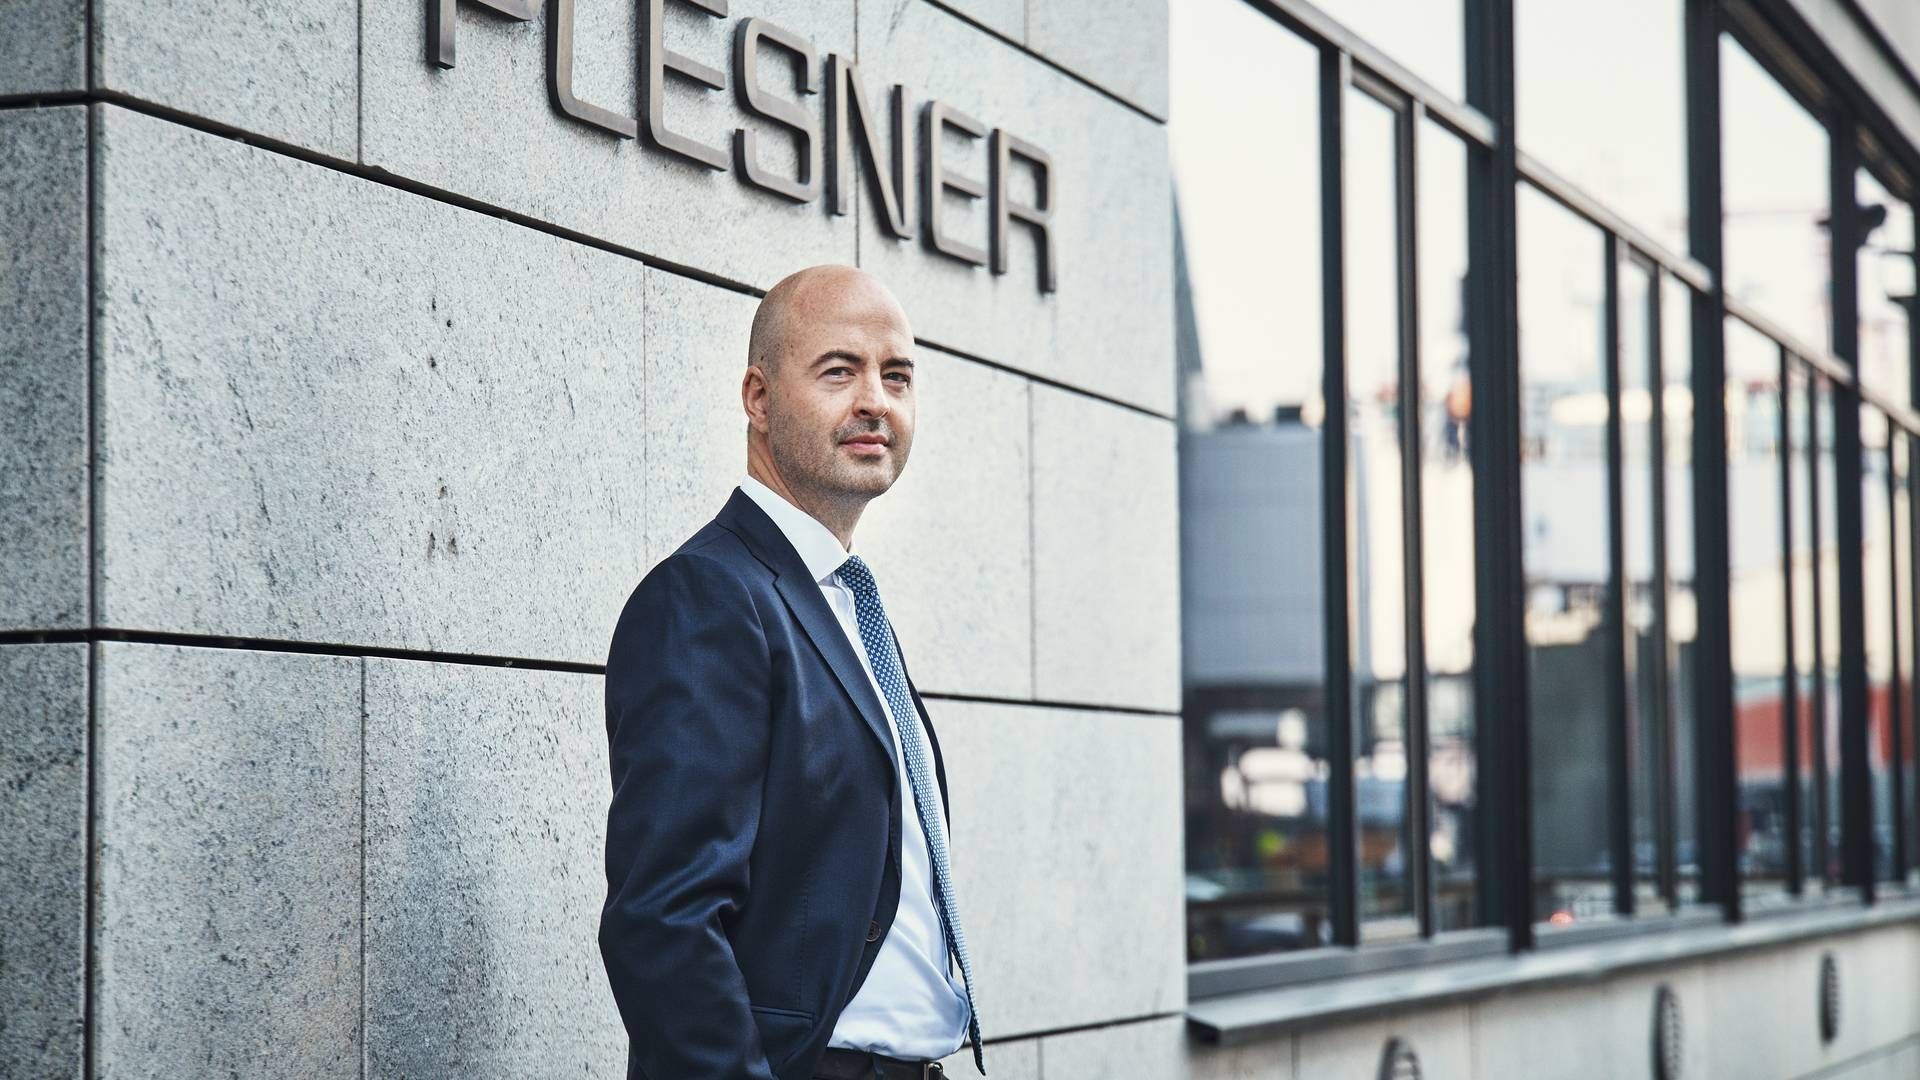 Plesners ledende partner, Niklas Korsgaard Christensen, er en af de topchefer i advokatbranchen, der kan glæde sig over høj vækst i 2021. | Foto: Jeppe Carlsen